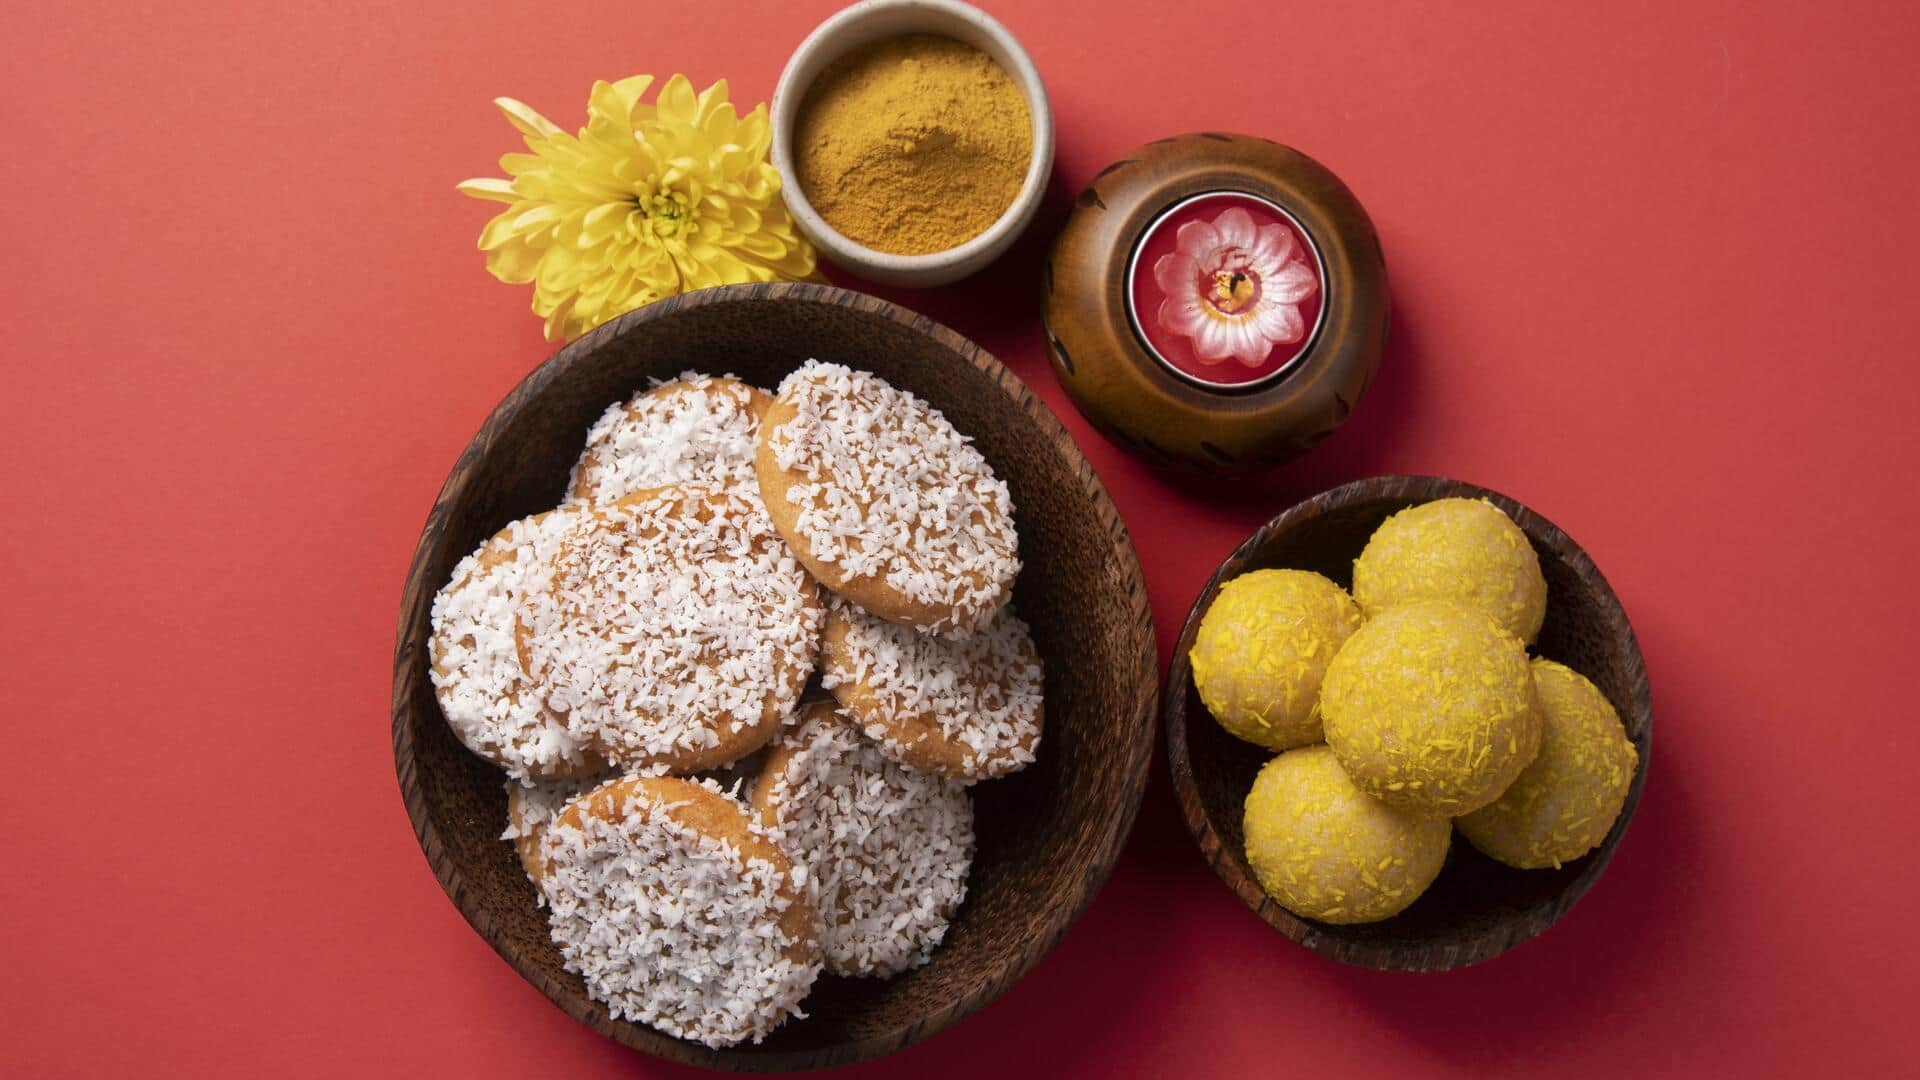 नवरात्रि: व्रत के दौरान मीठा खाने का मन करें तो बनाएं ये 5 व्यंजन, जानें रेसिपी